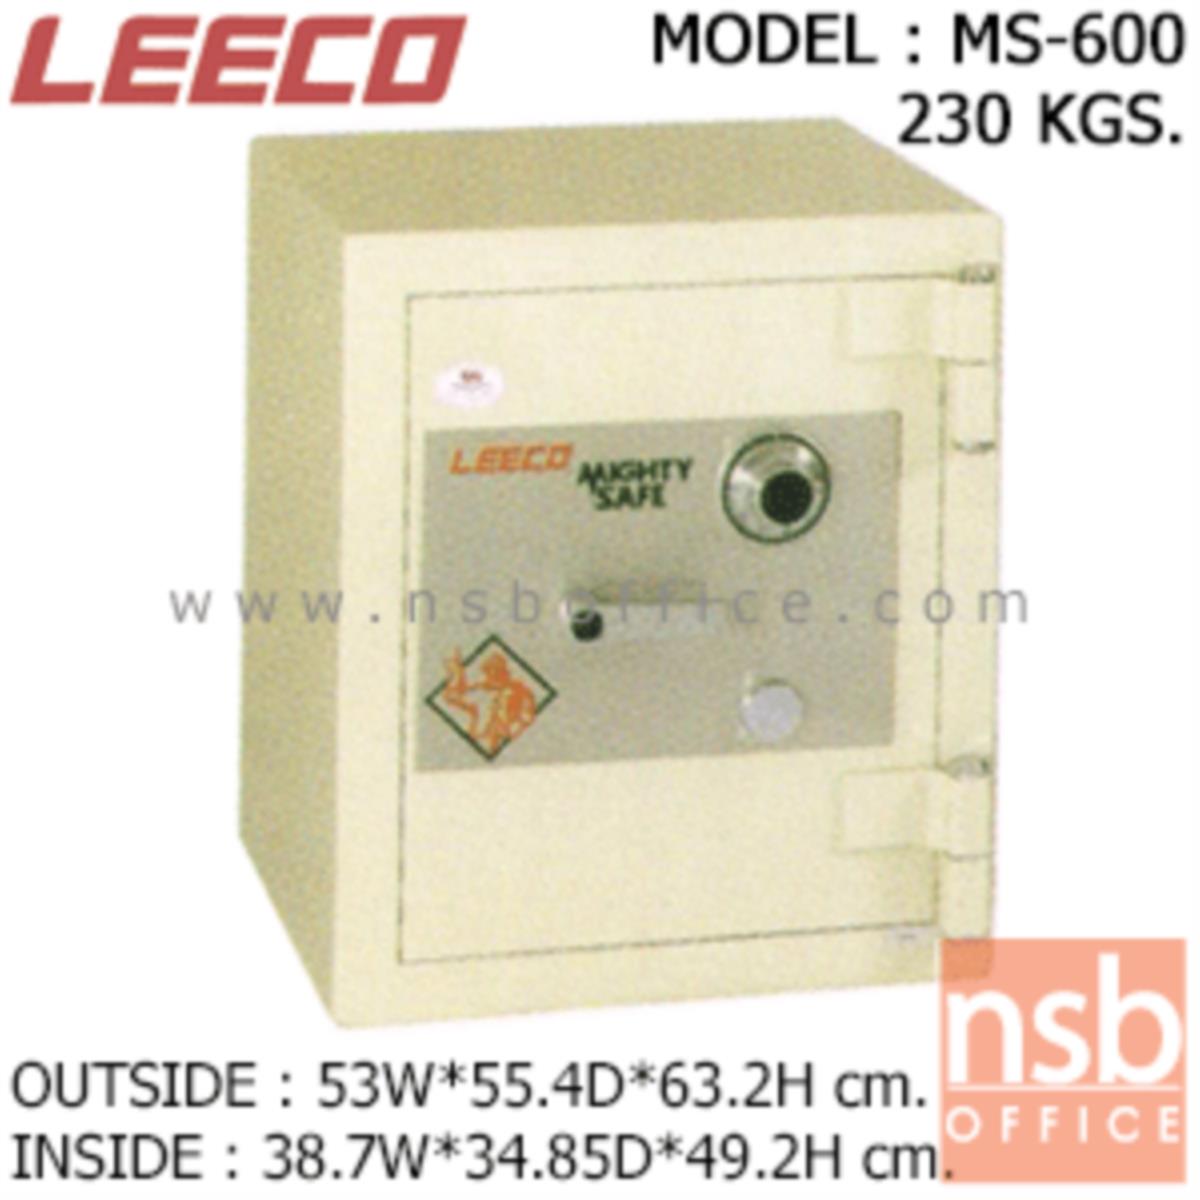 ตู้เซฟนิรภัย 230 กก. ลีโก้ รุ่น LEECO-MS-600 มี 1 กุญแจ 1 รหัส (เปลี่ยนรหัสไม่ได้)   